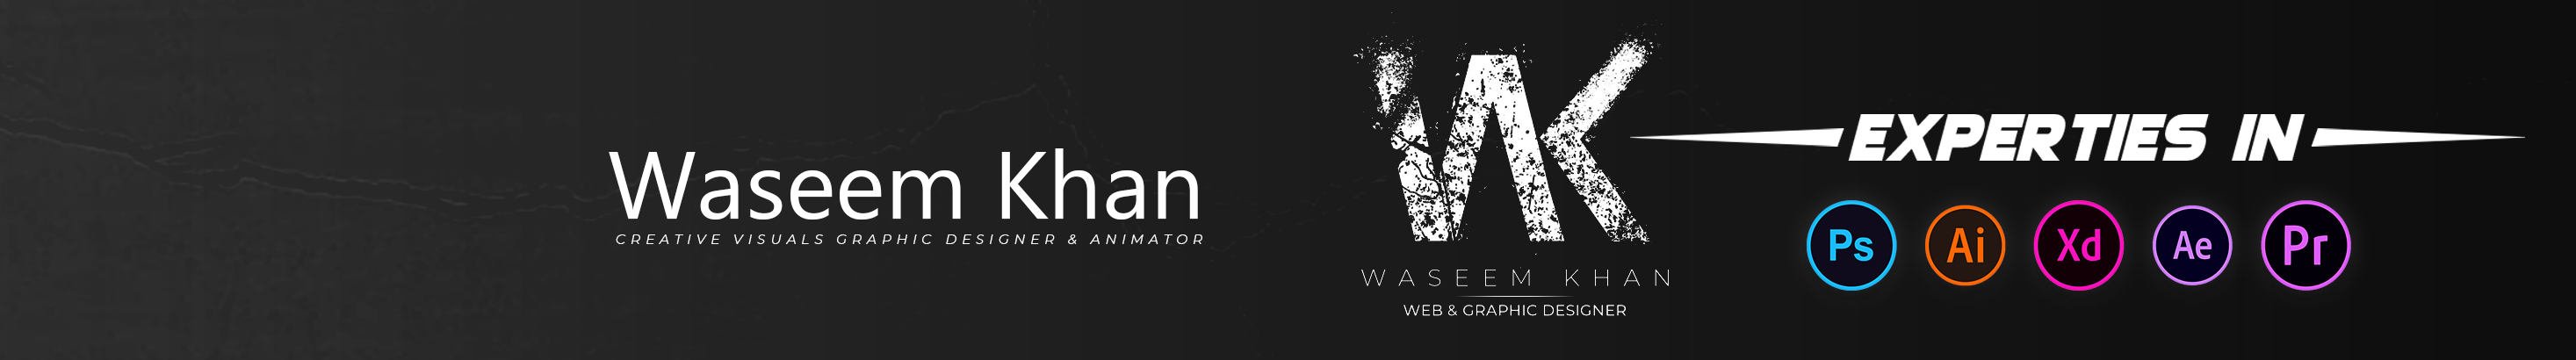 Waseem Khan profil başlığı